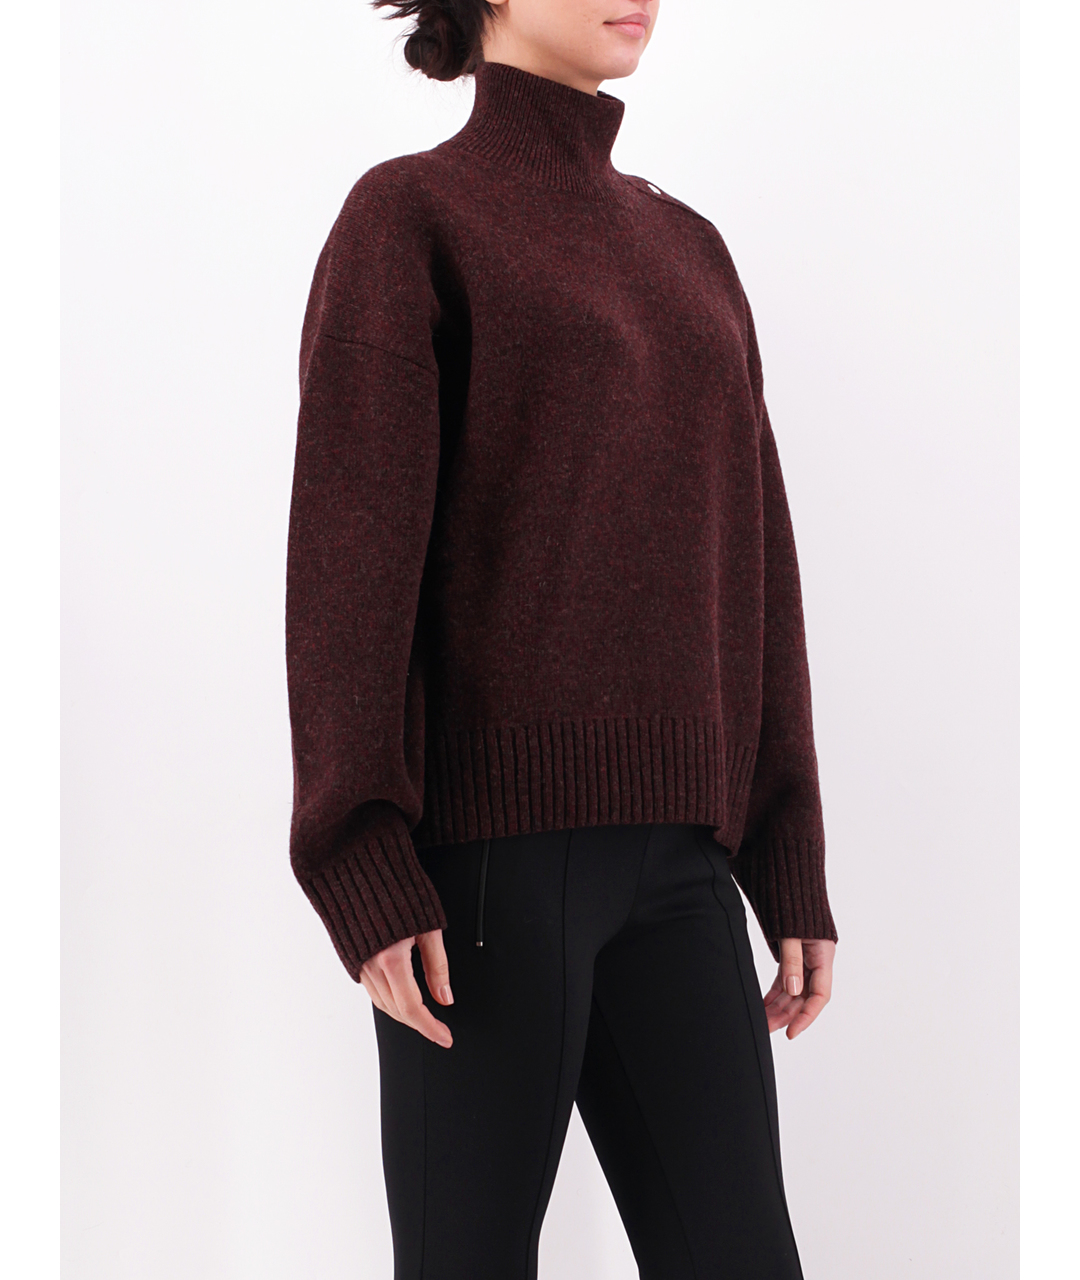 CELINE PRE-OWNED Бордовый кашемировый джемпер / свитер, фото 2